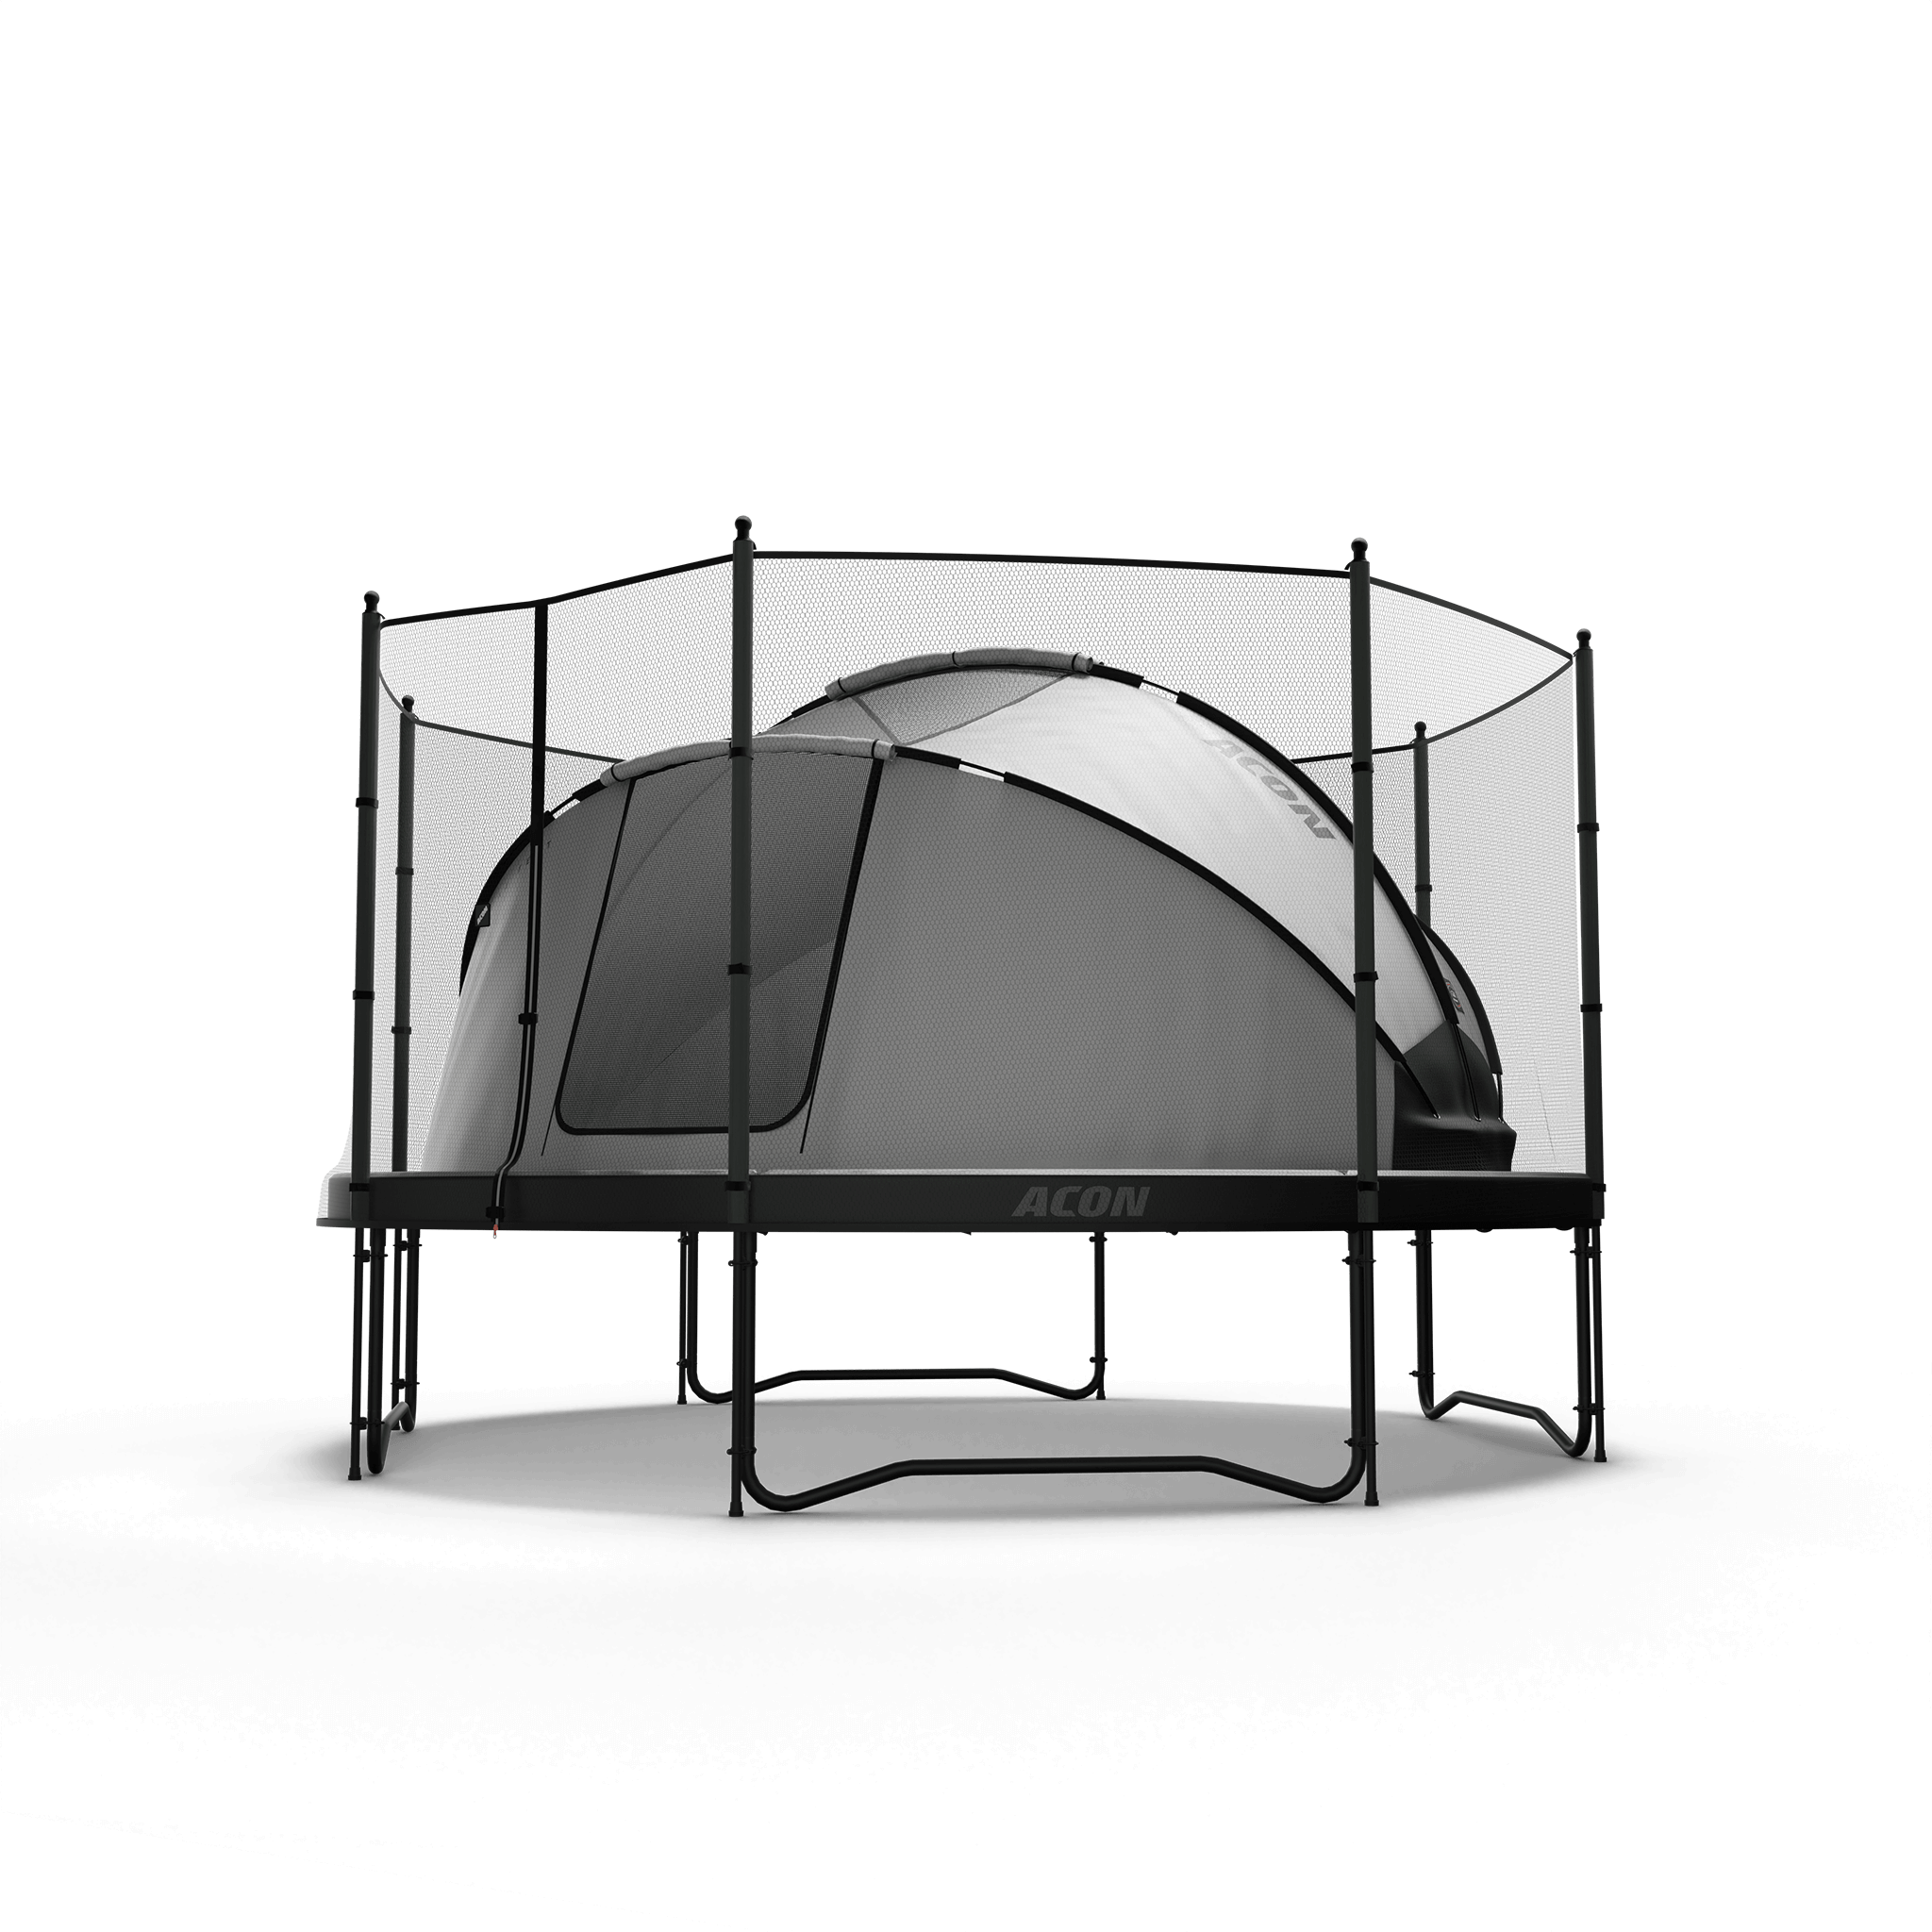 Acon Trampolin-Zelt mit Standard-Sicherheitsnetz, Türen offen